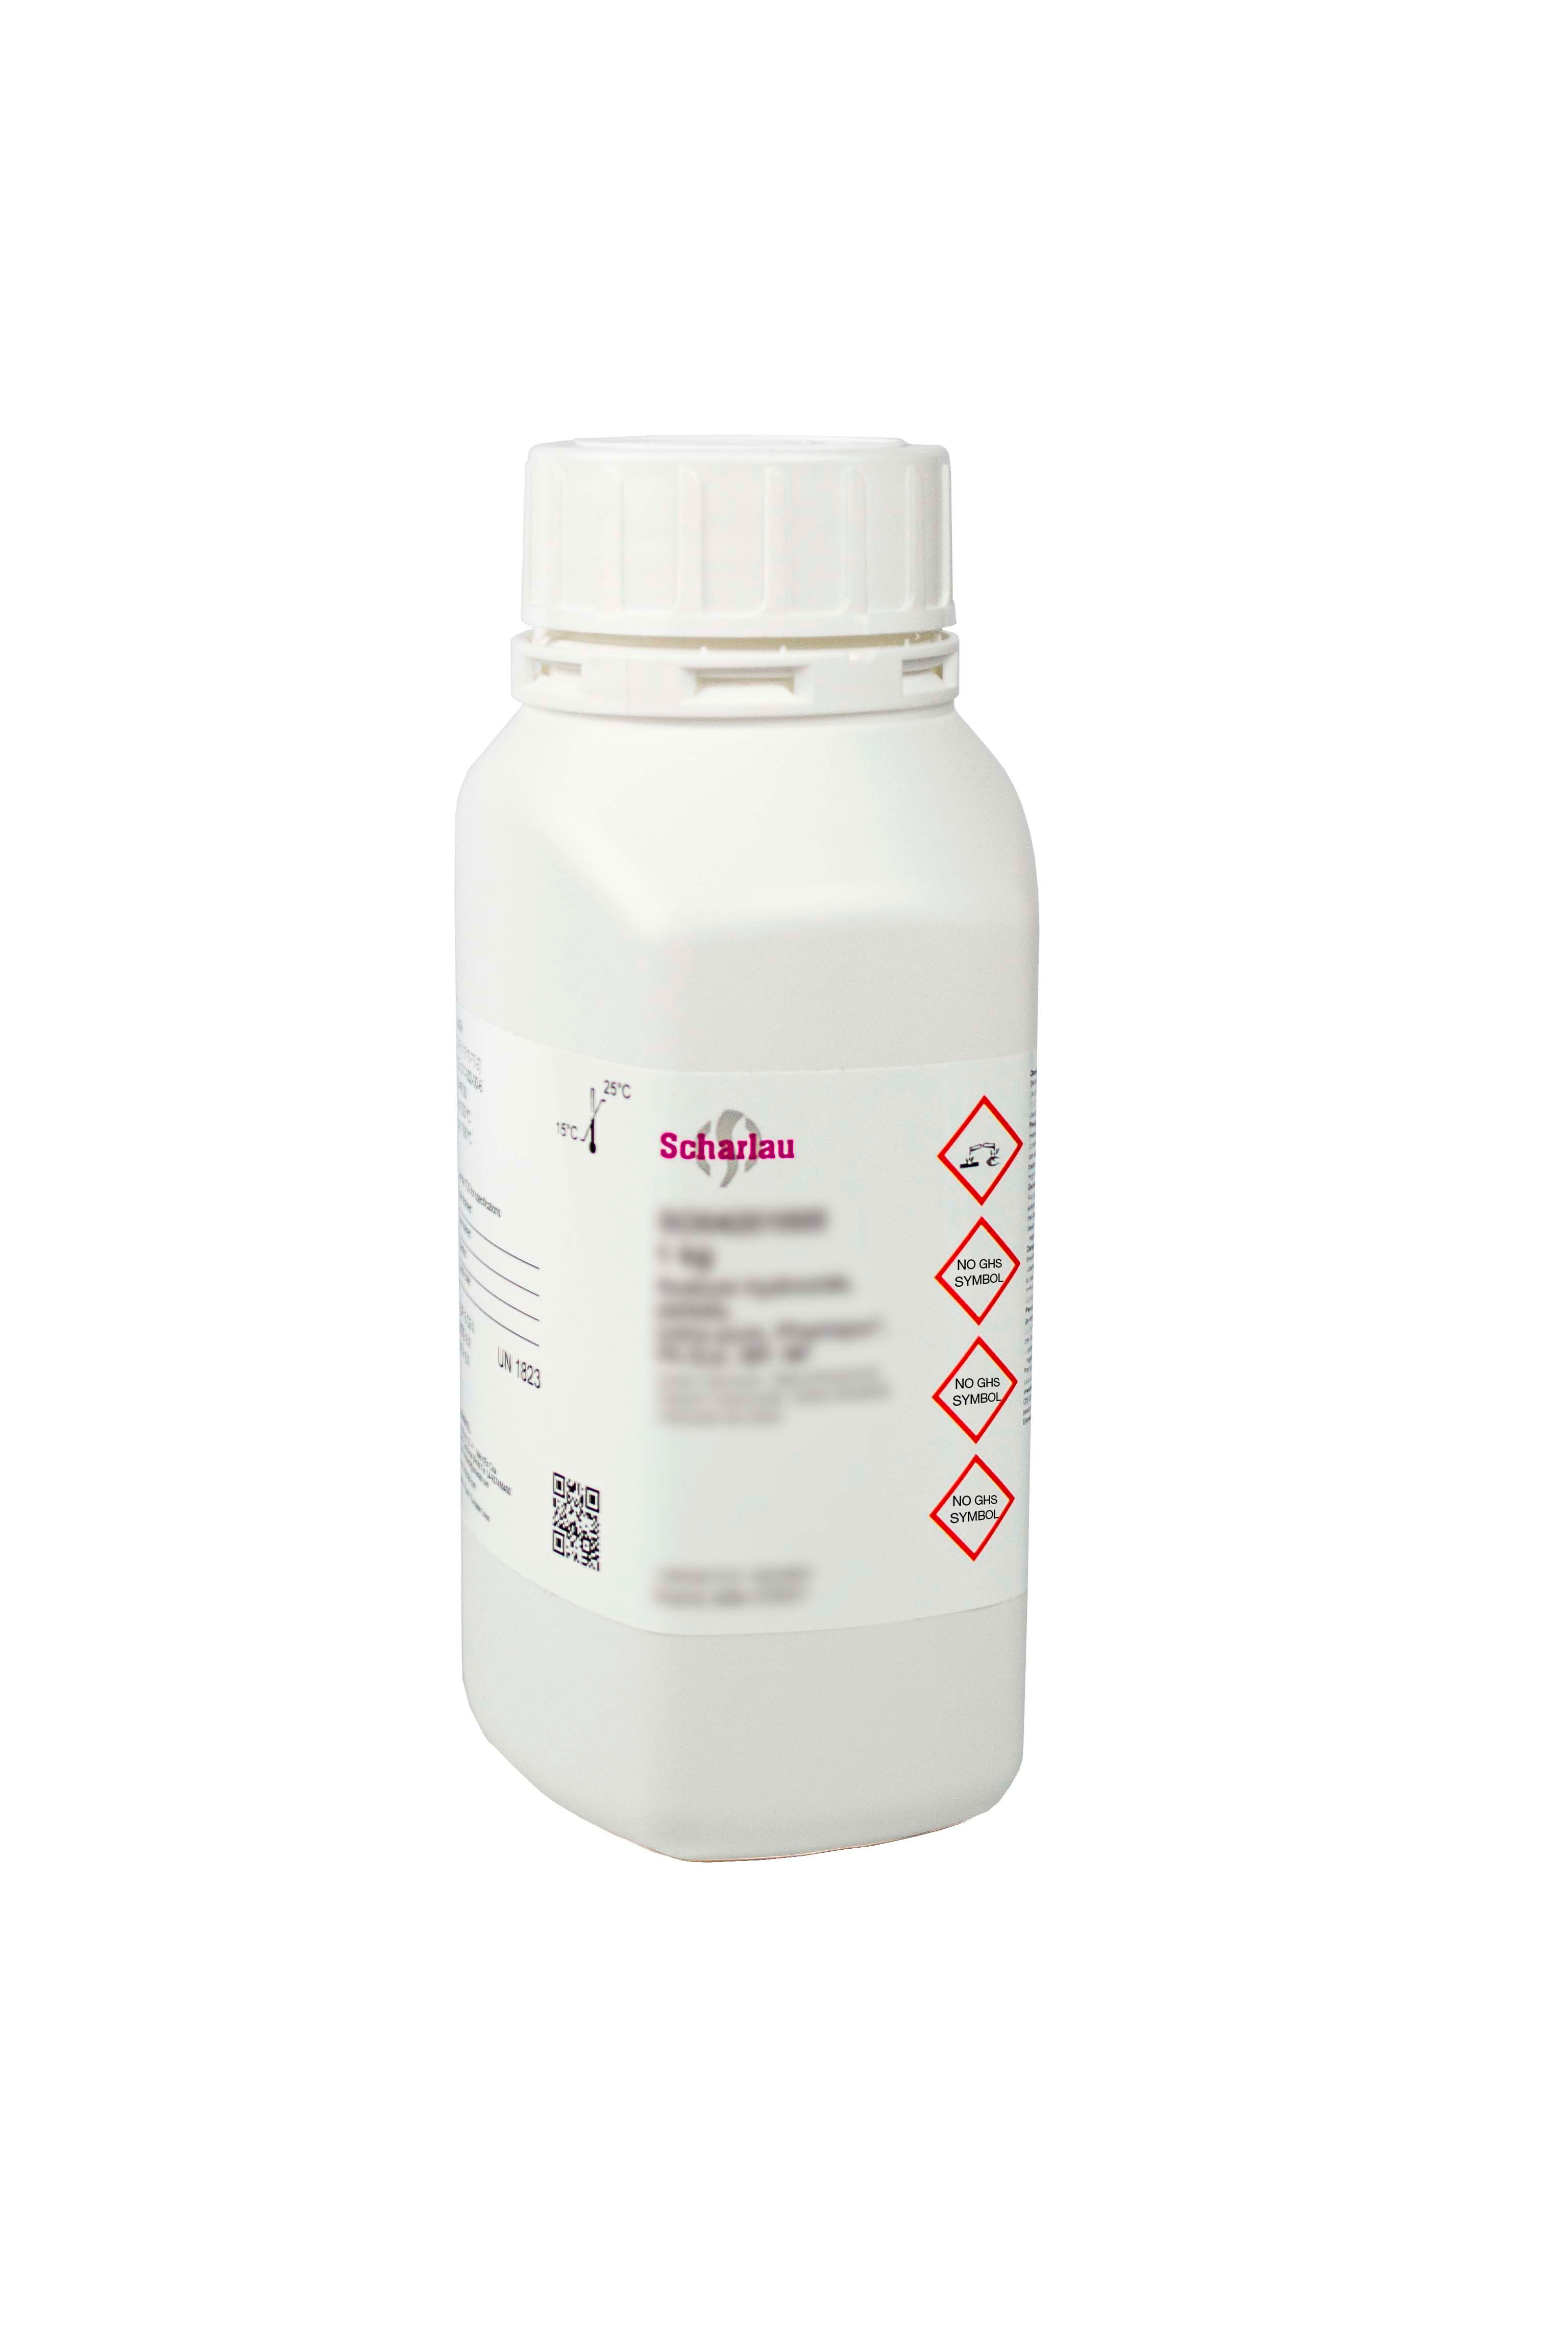 Lead(II) acetate trihydrate, EssentQ®